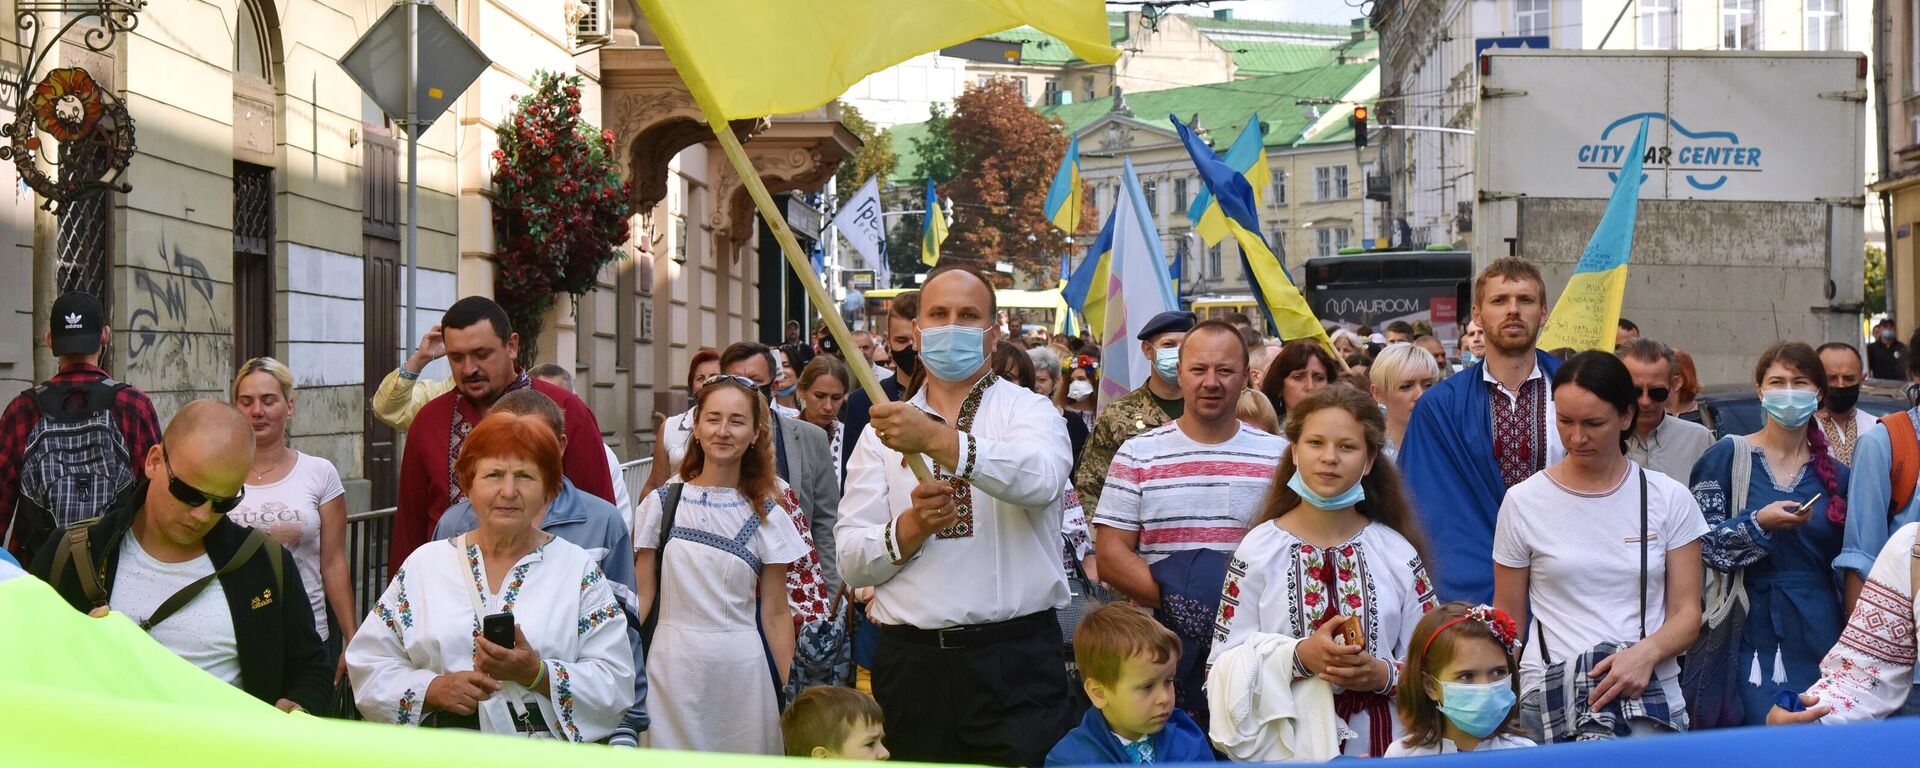 Участники Марша непокоренных во Львове в честь Дня независимости Украины, архивное фото - Sputnik Литва, 1920, 19.08.2021